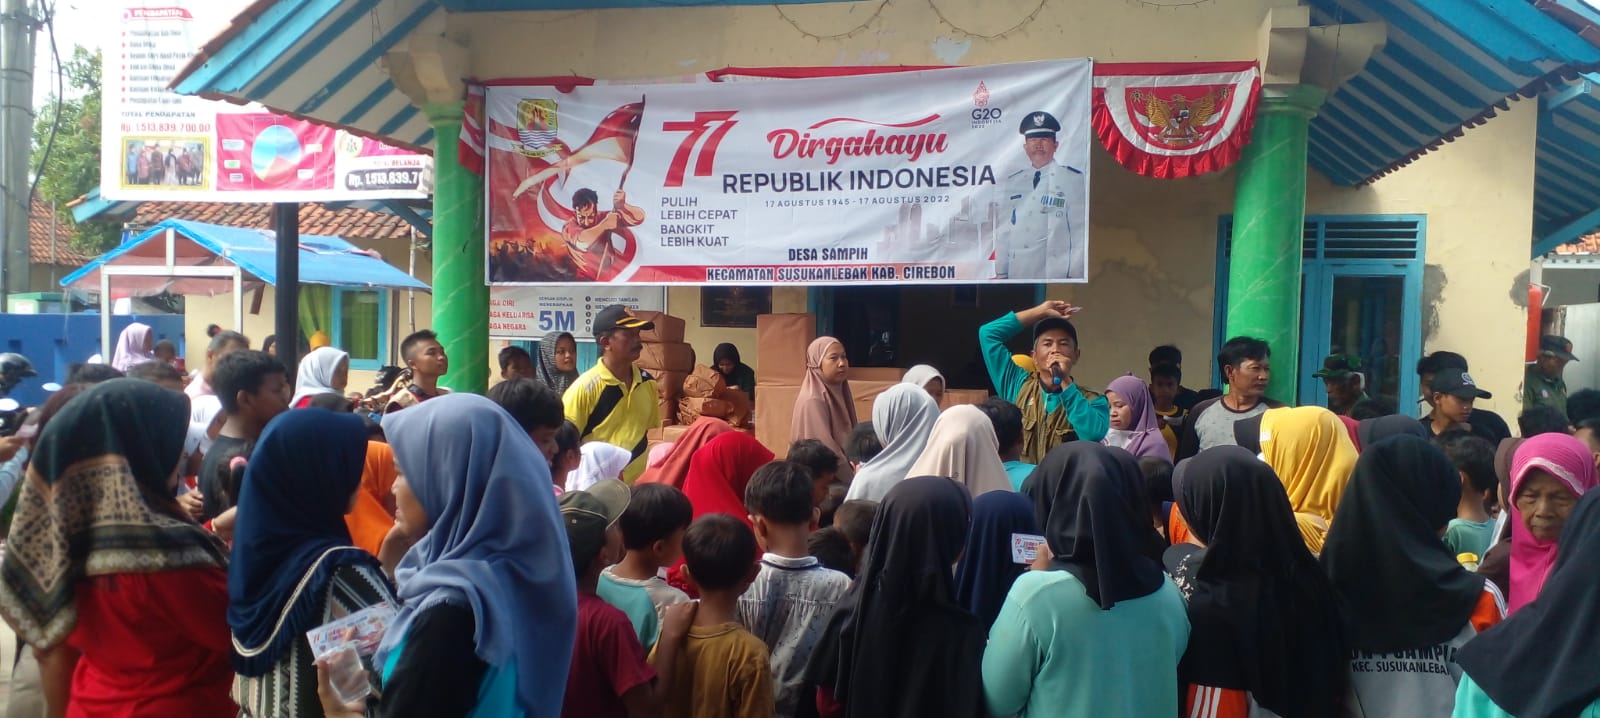 Perayaan HUT RI di Desa Sampih, Perempuan yang Berusia 77 Tahun Terima Hadiah Spesial 